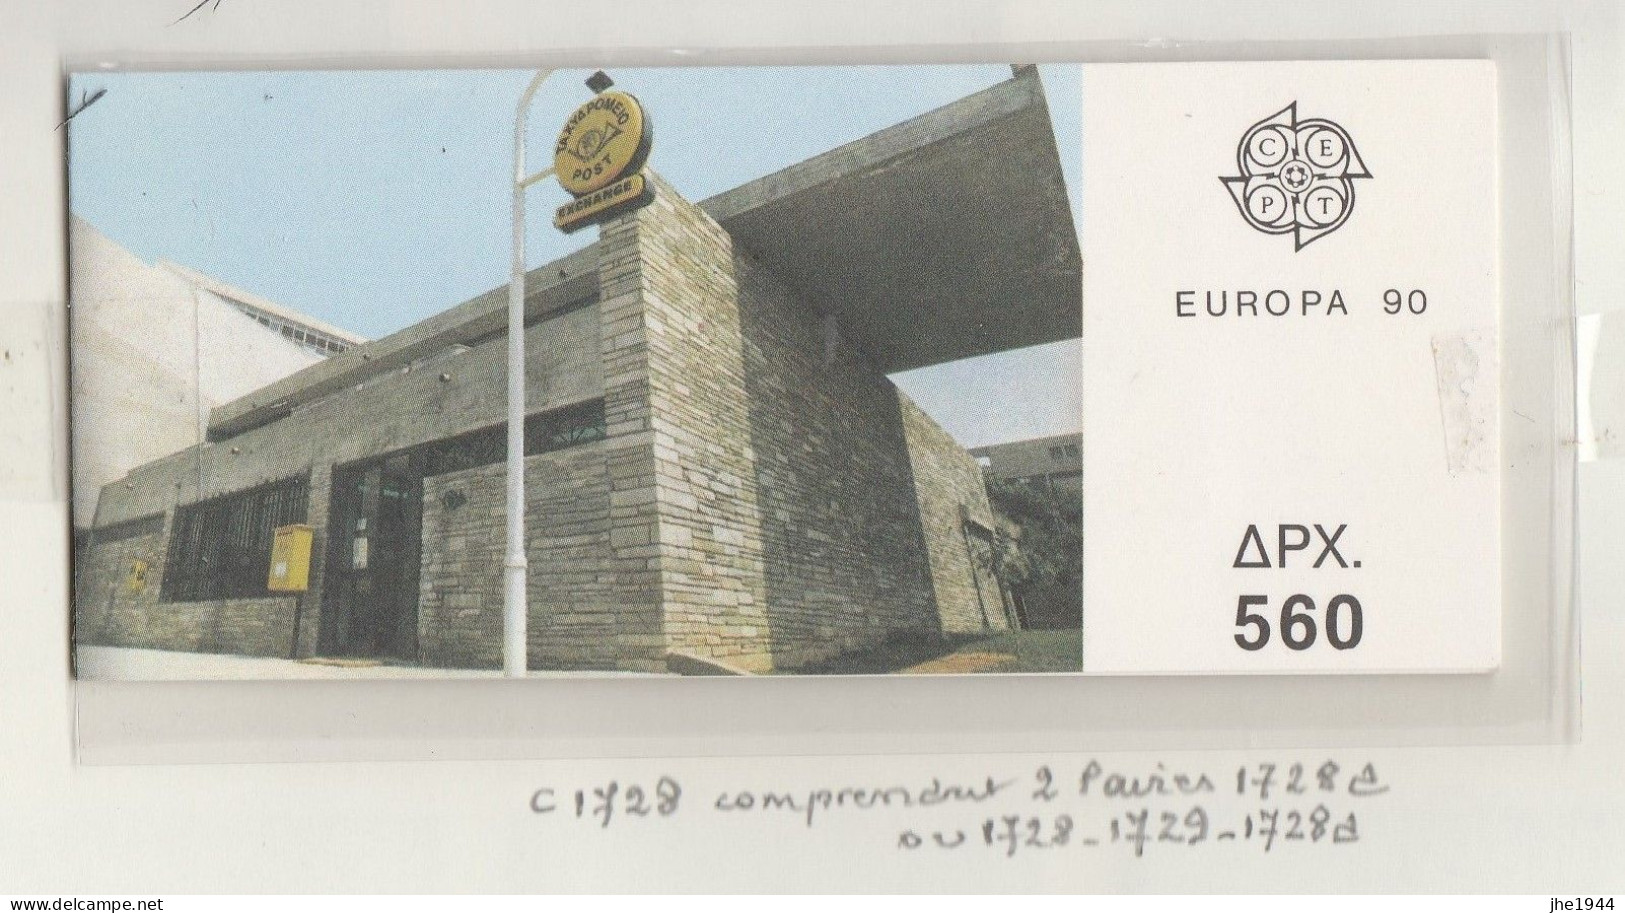 Europa 1990 Etablissements postaux Voir liste des timbres à vendre **